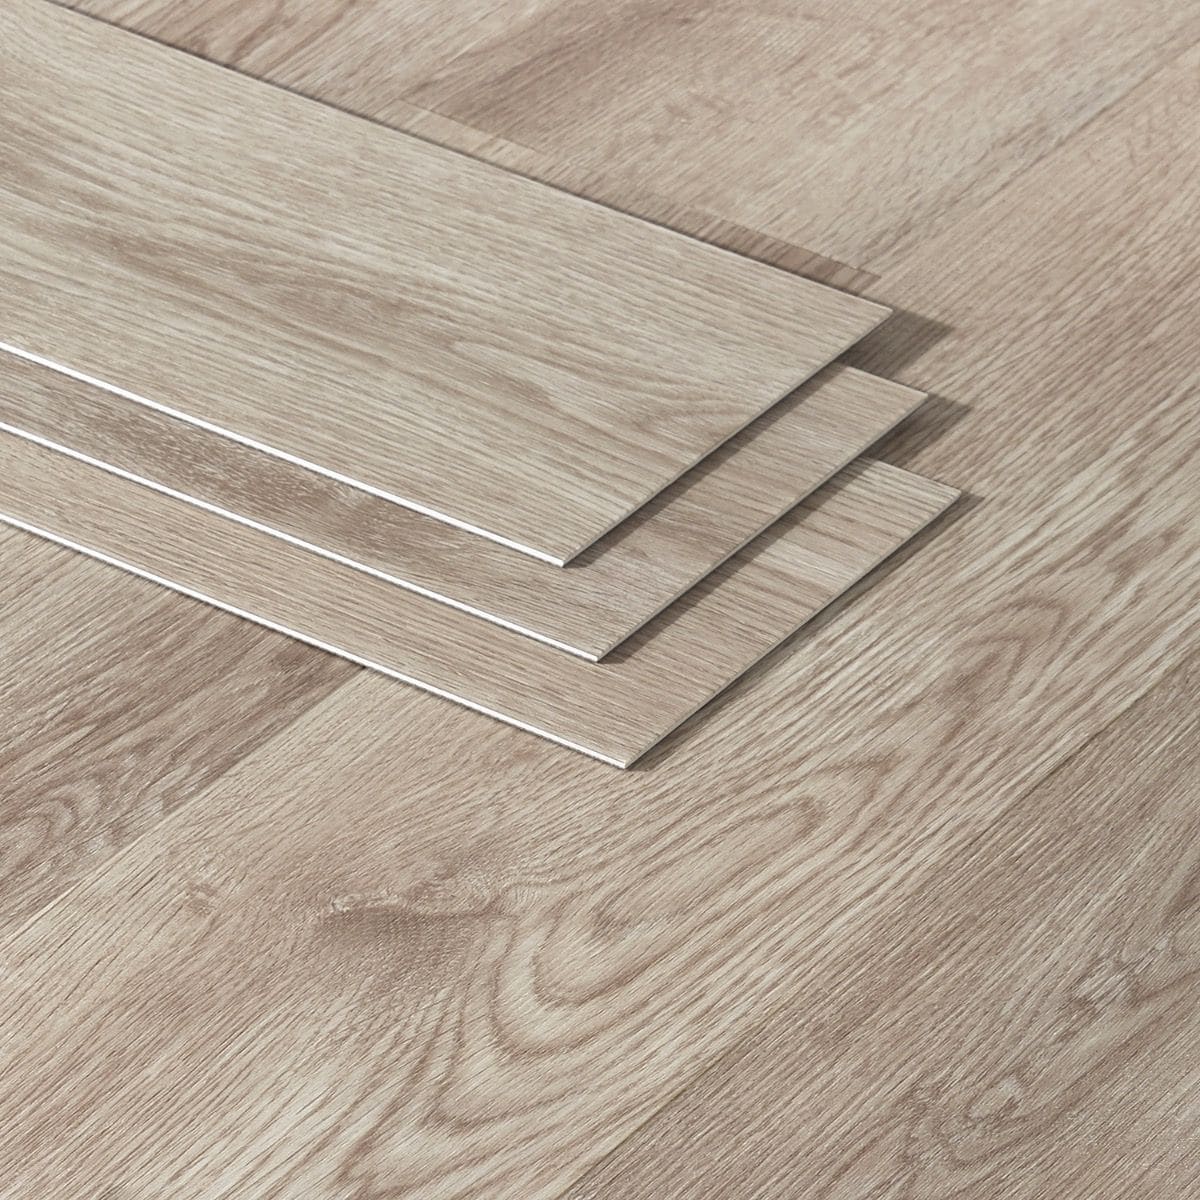 Artmore Tile Loseta Wood Look Modern, Hardwood Flooring Modern Look